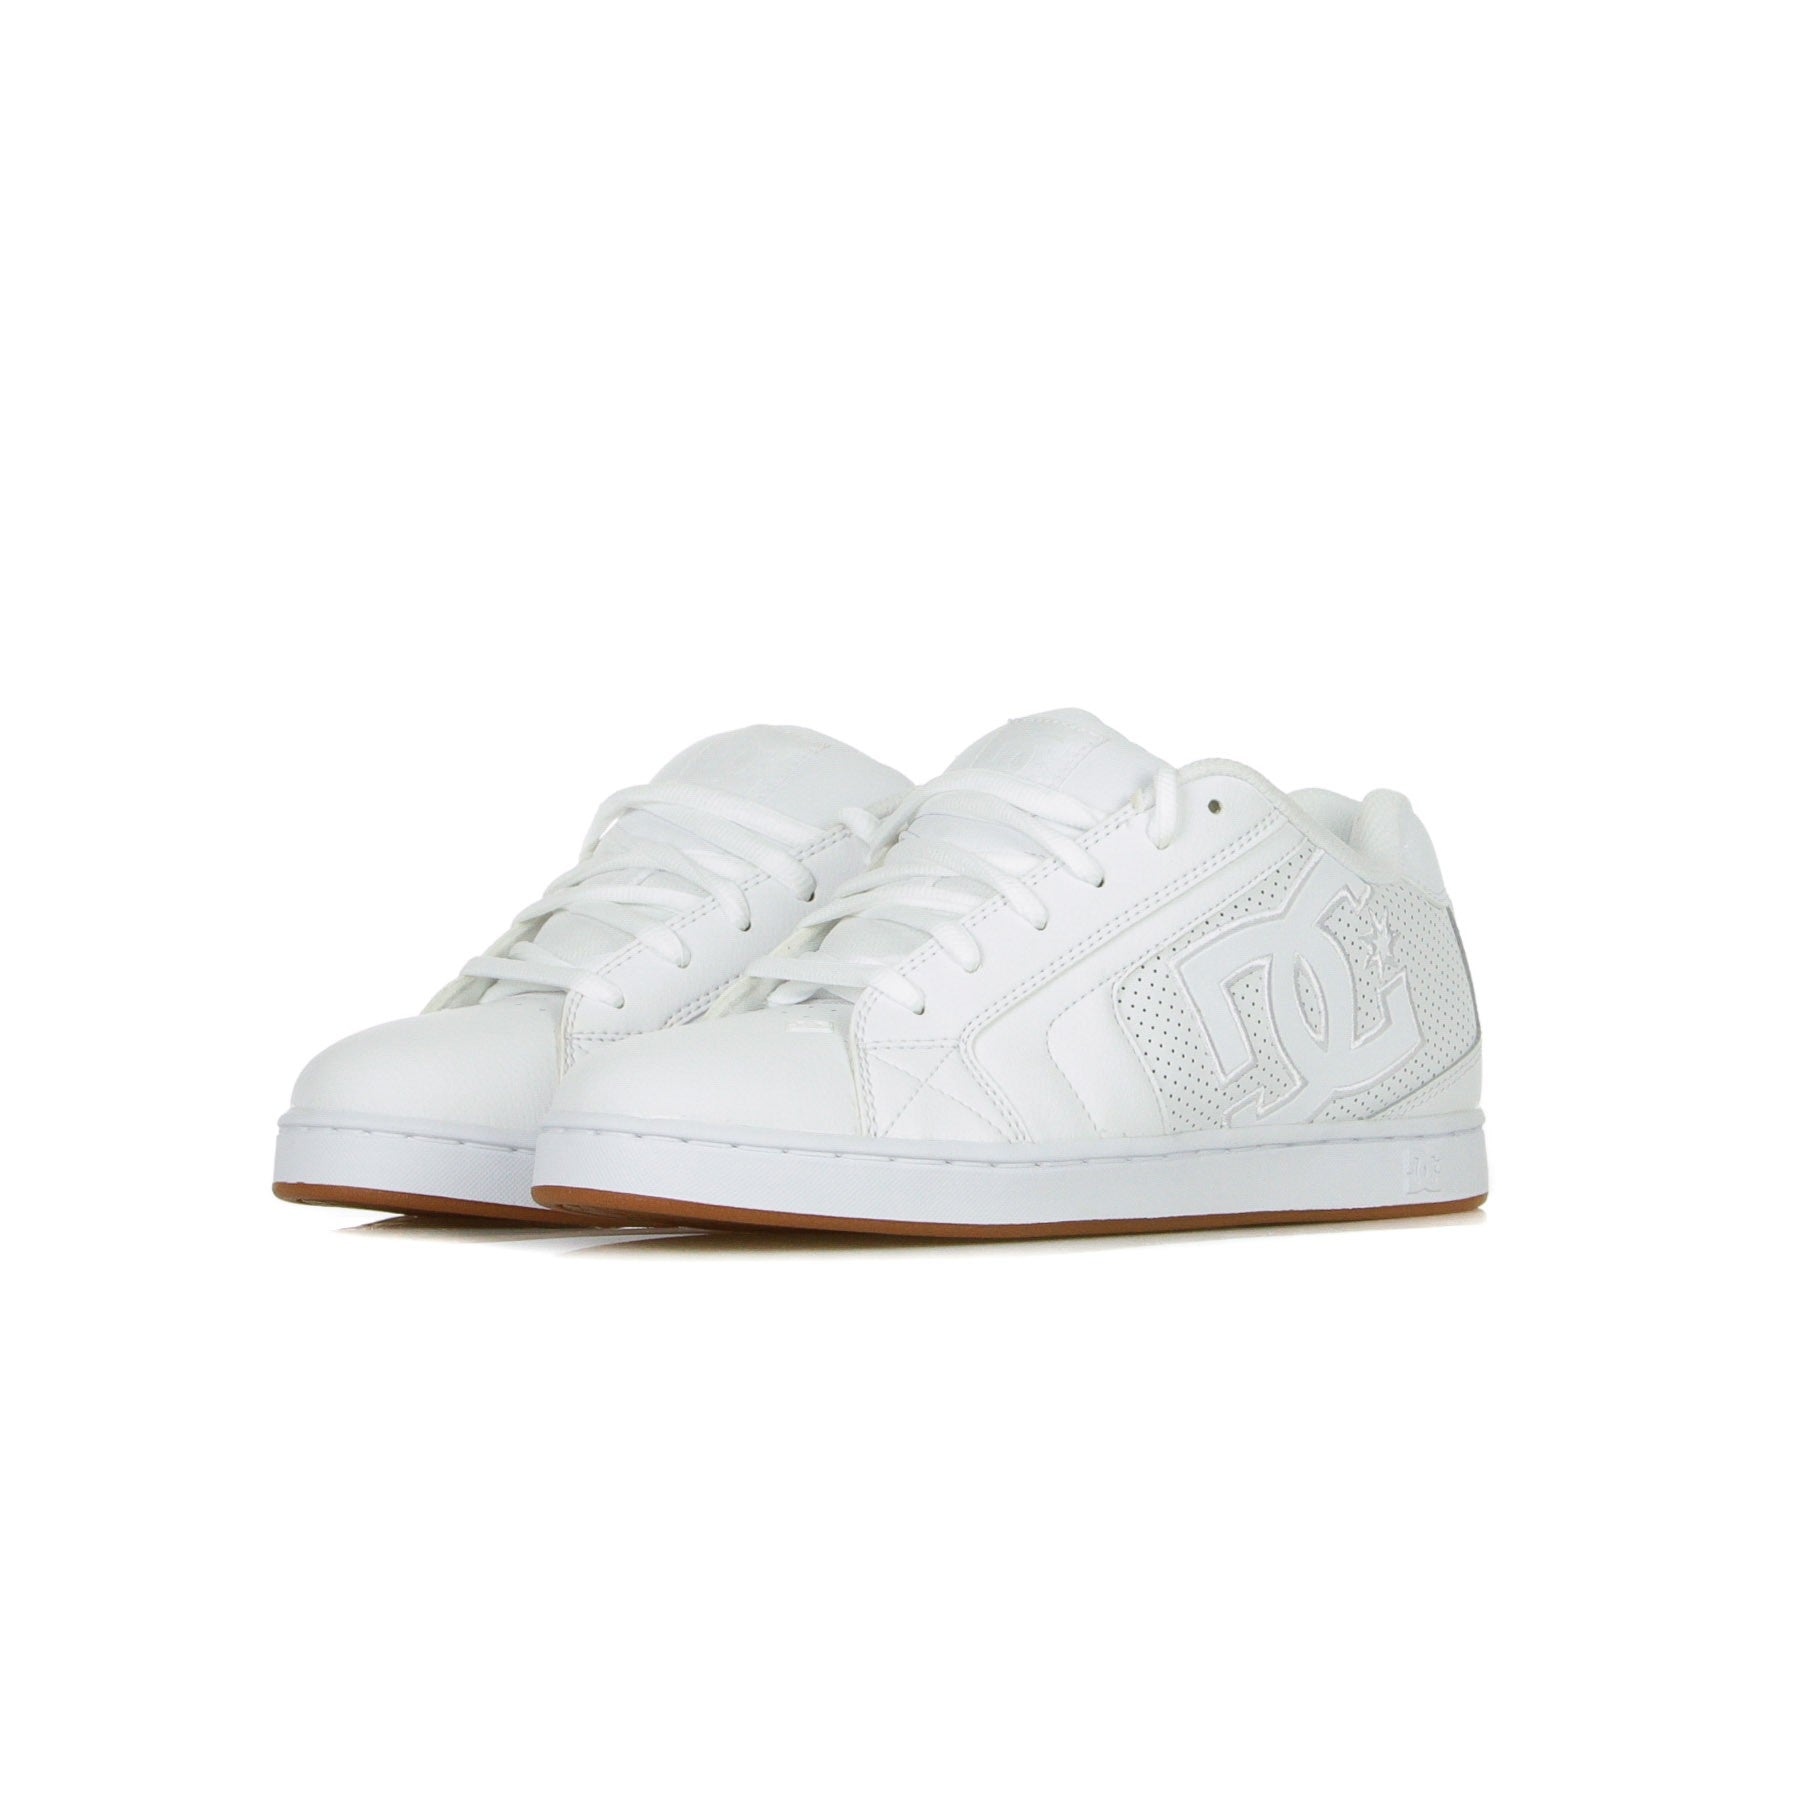 Men's Skate Shoes Net White/white/gum